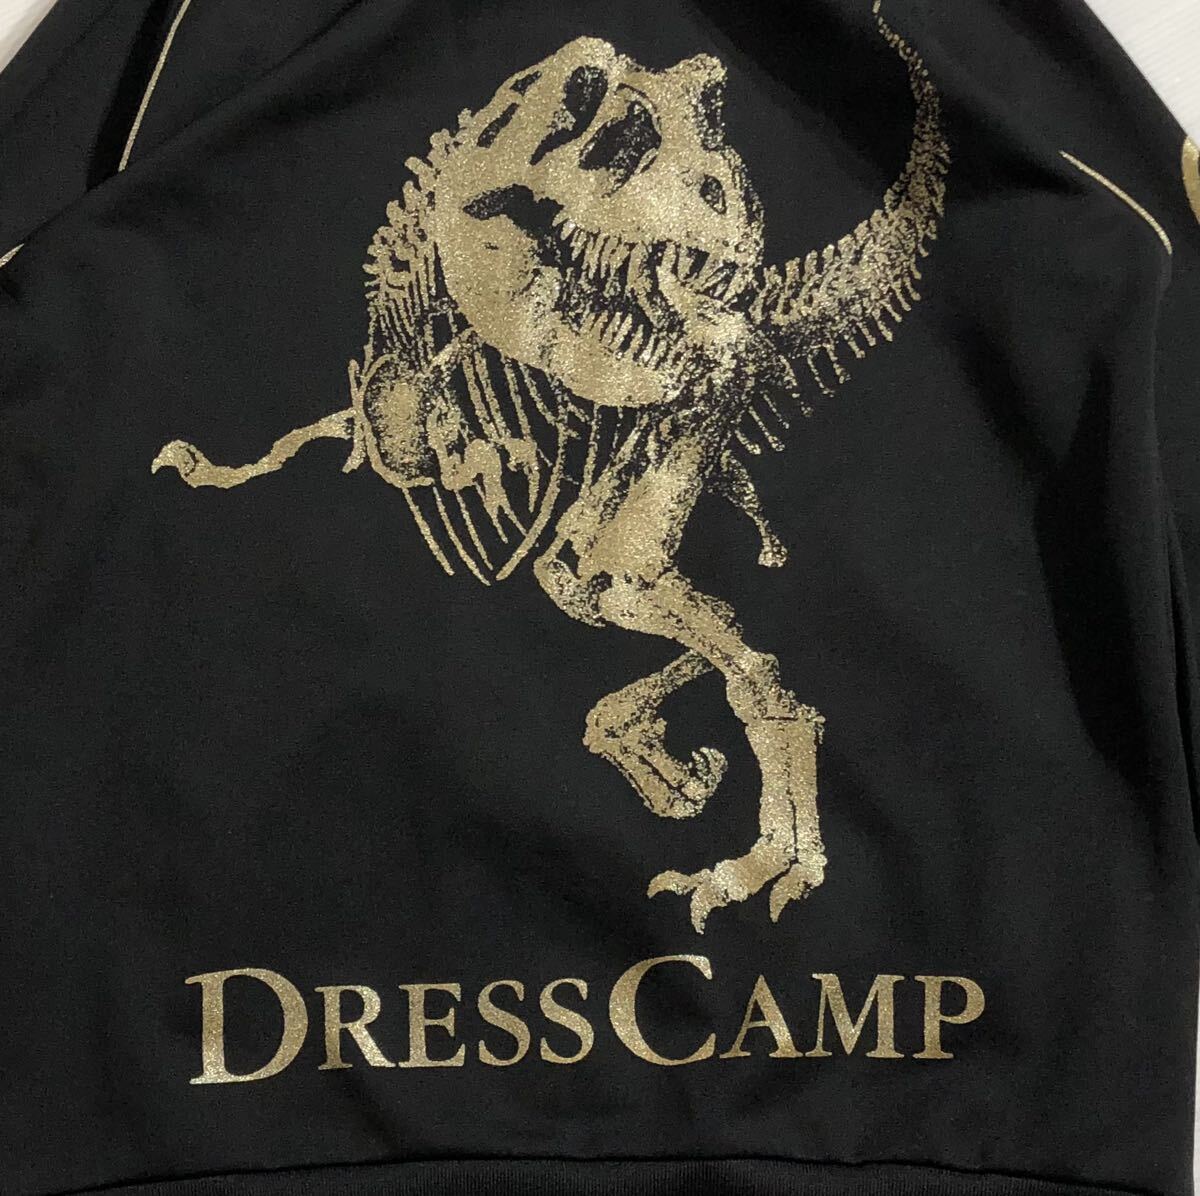  сотрудничество # Dress Camp × Champion # чёрный золотой Logo вышивка динозавр tilanosaurus окаменелость принт джерси спортивная куртка черный 